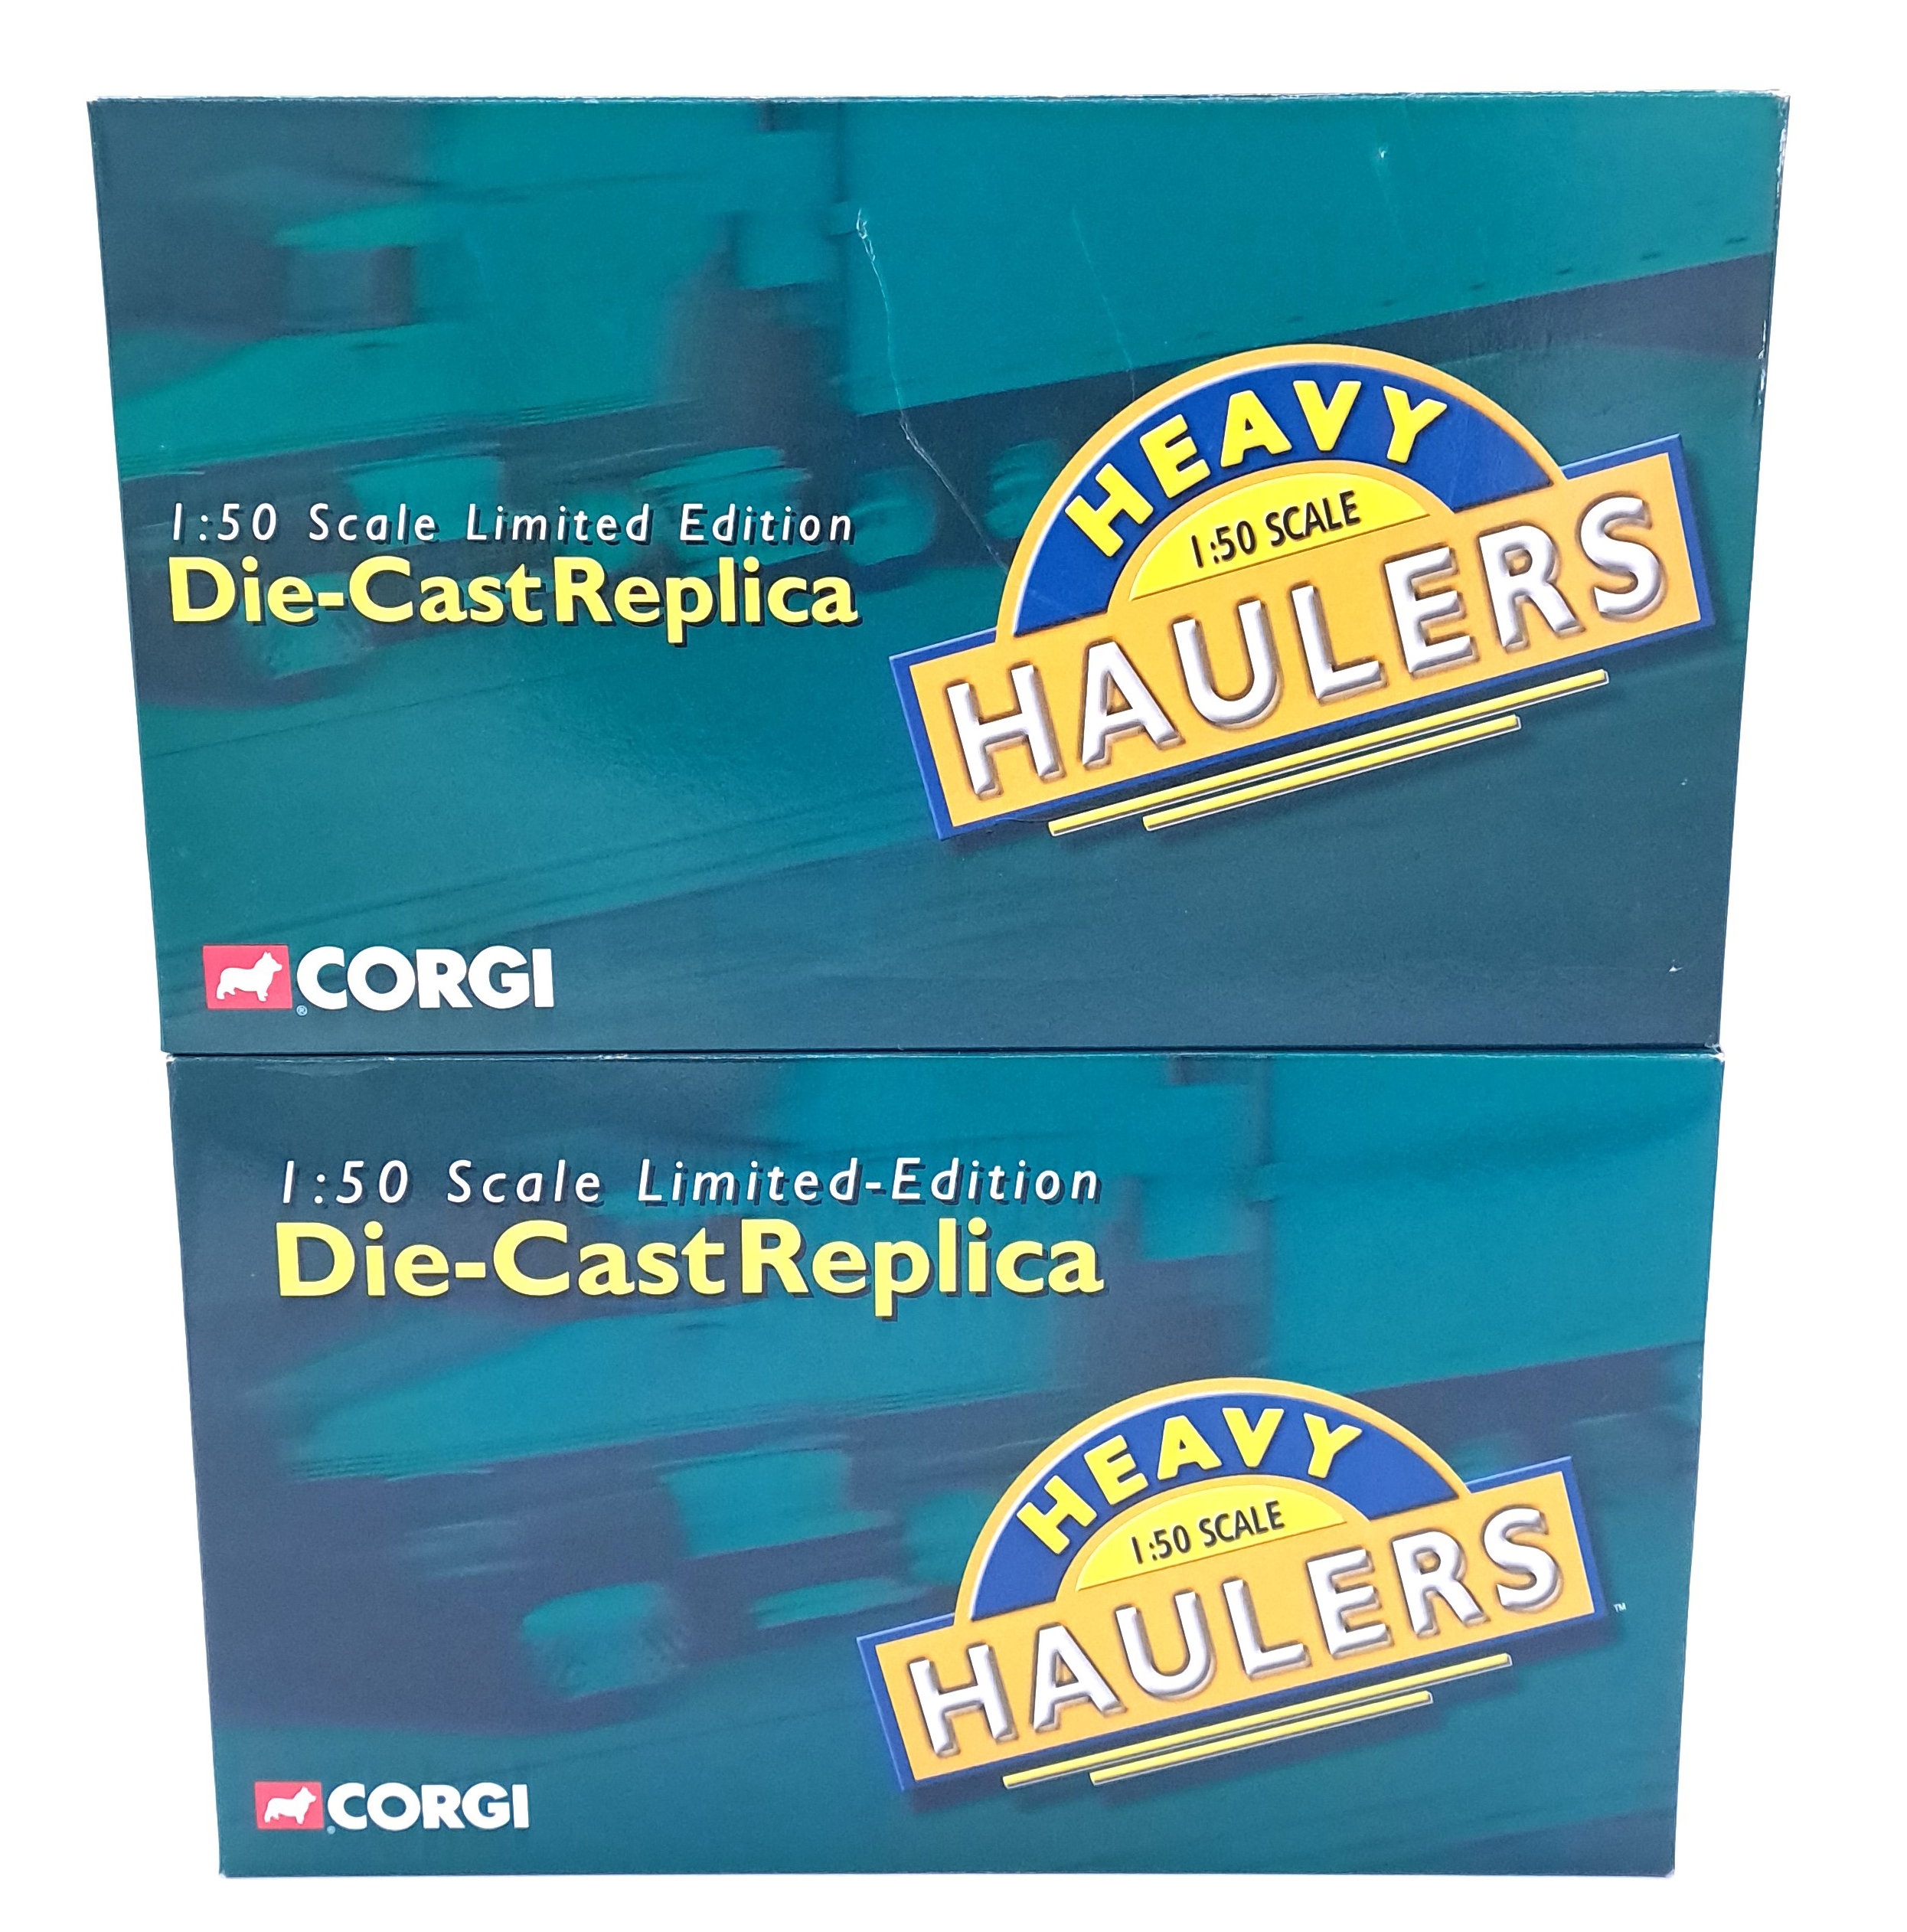 Corgi "Heavy Hauliers" series, a boxed 1:50 scale pair